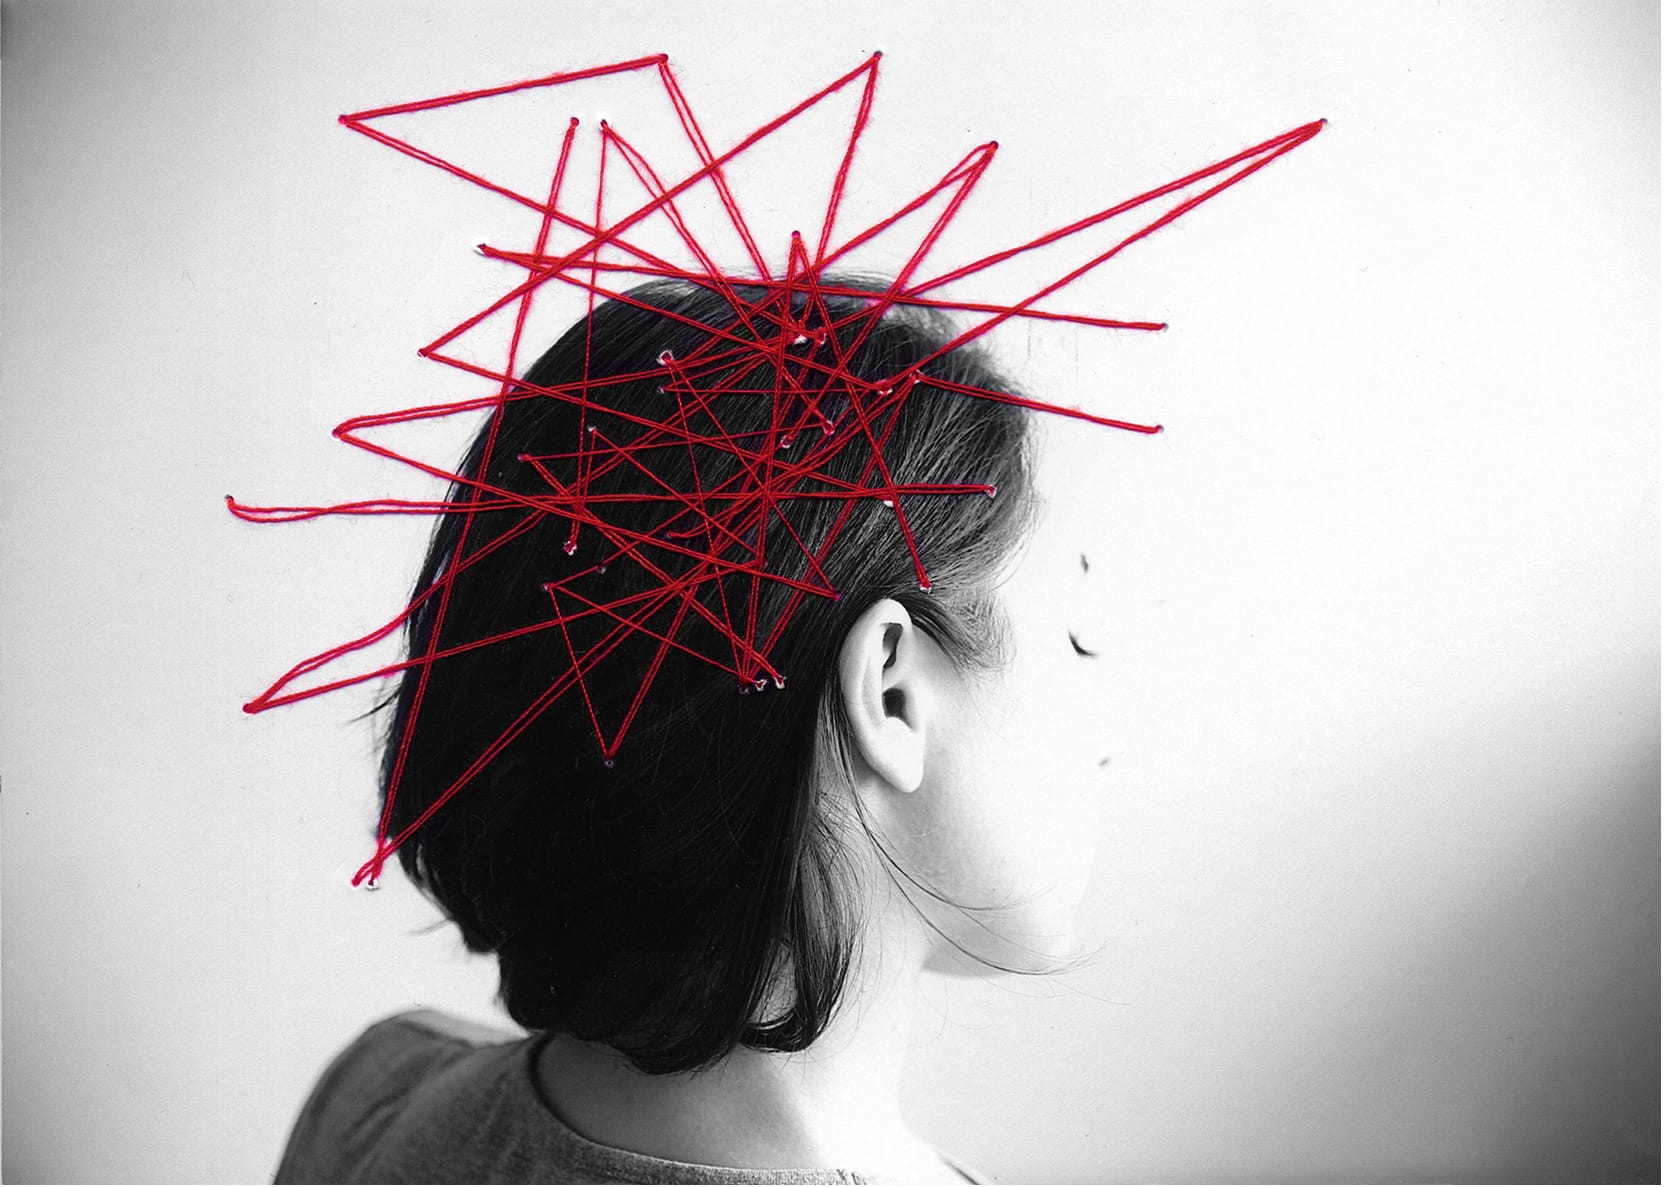 Photographie en noir et blanc d'une femme de dos. Des fils rouges sont épinglés sur la photo, sur la tête de la femme